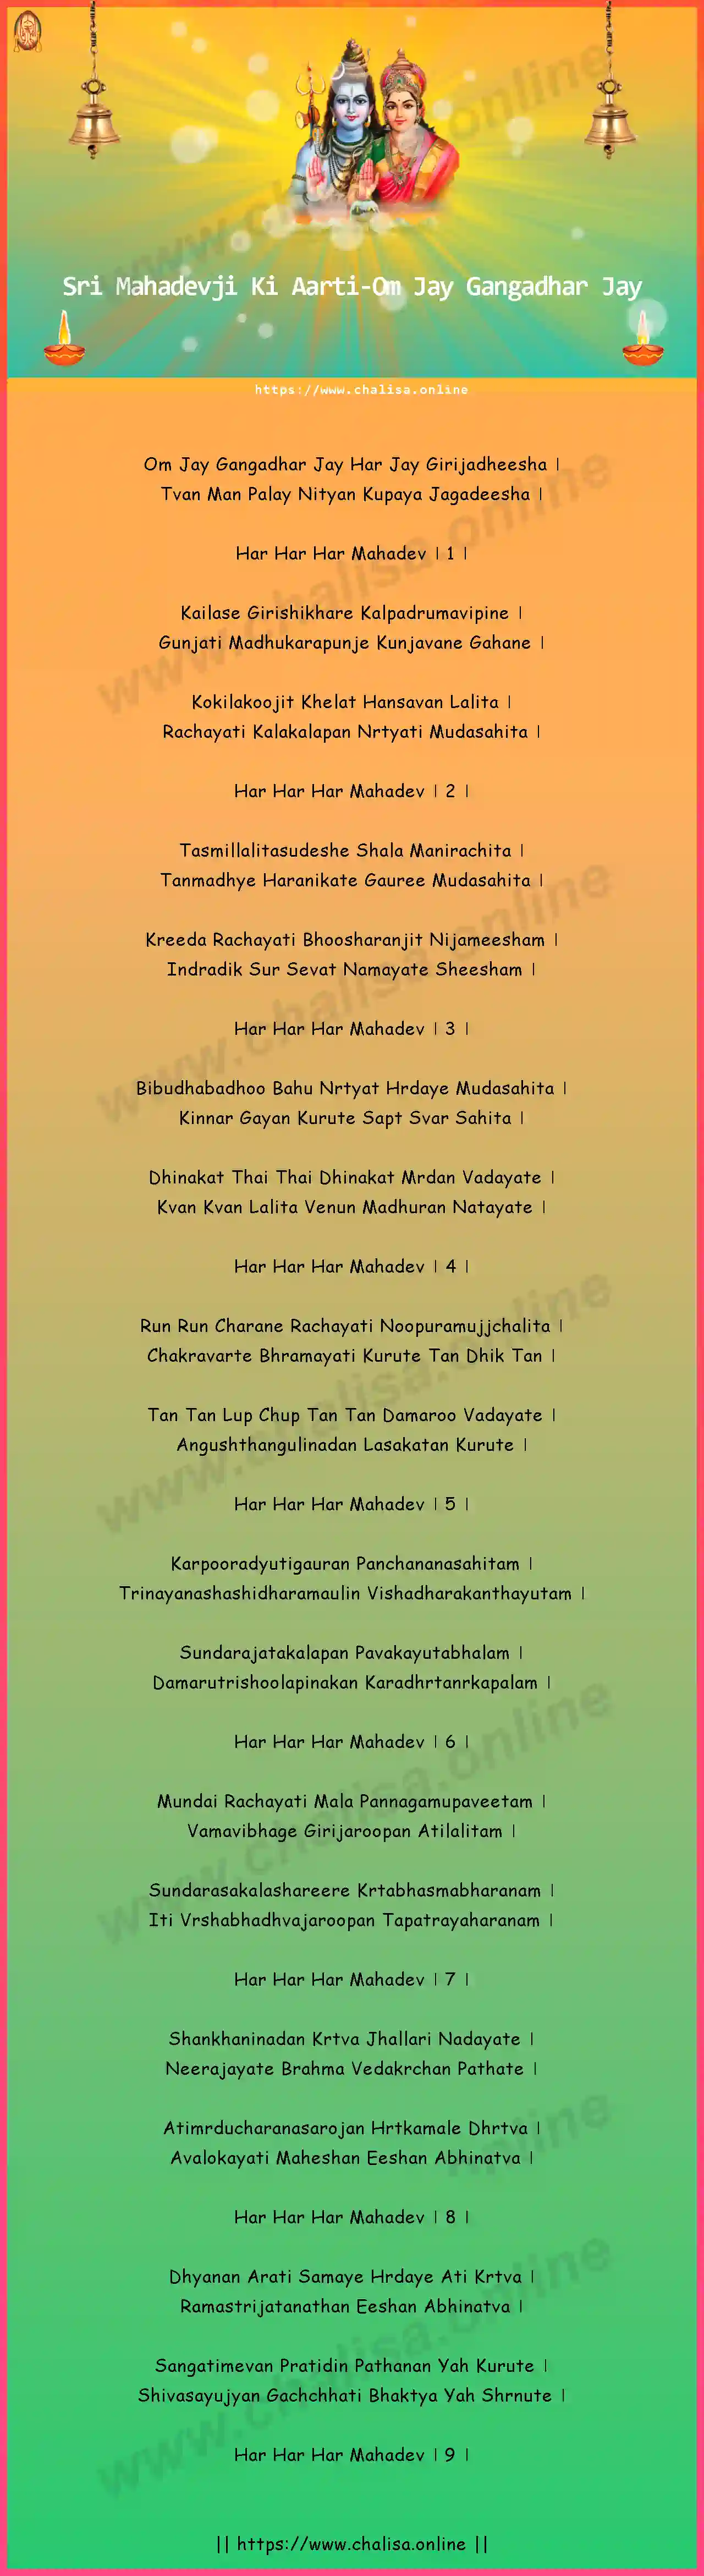 om-jay-gangadhar-sri-mahadevji-ki-aarti-english-lyrics-download